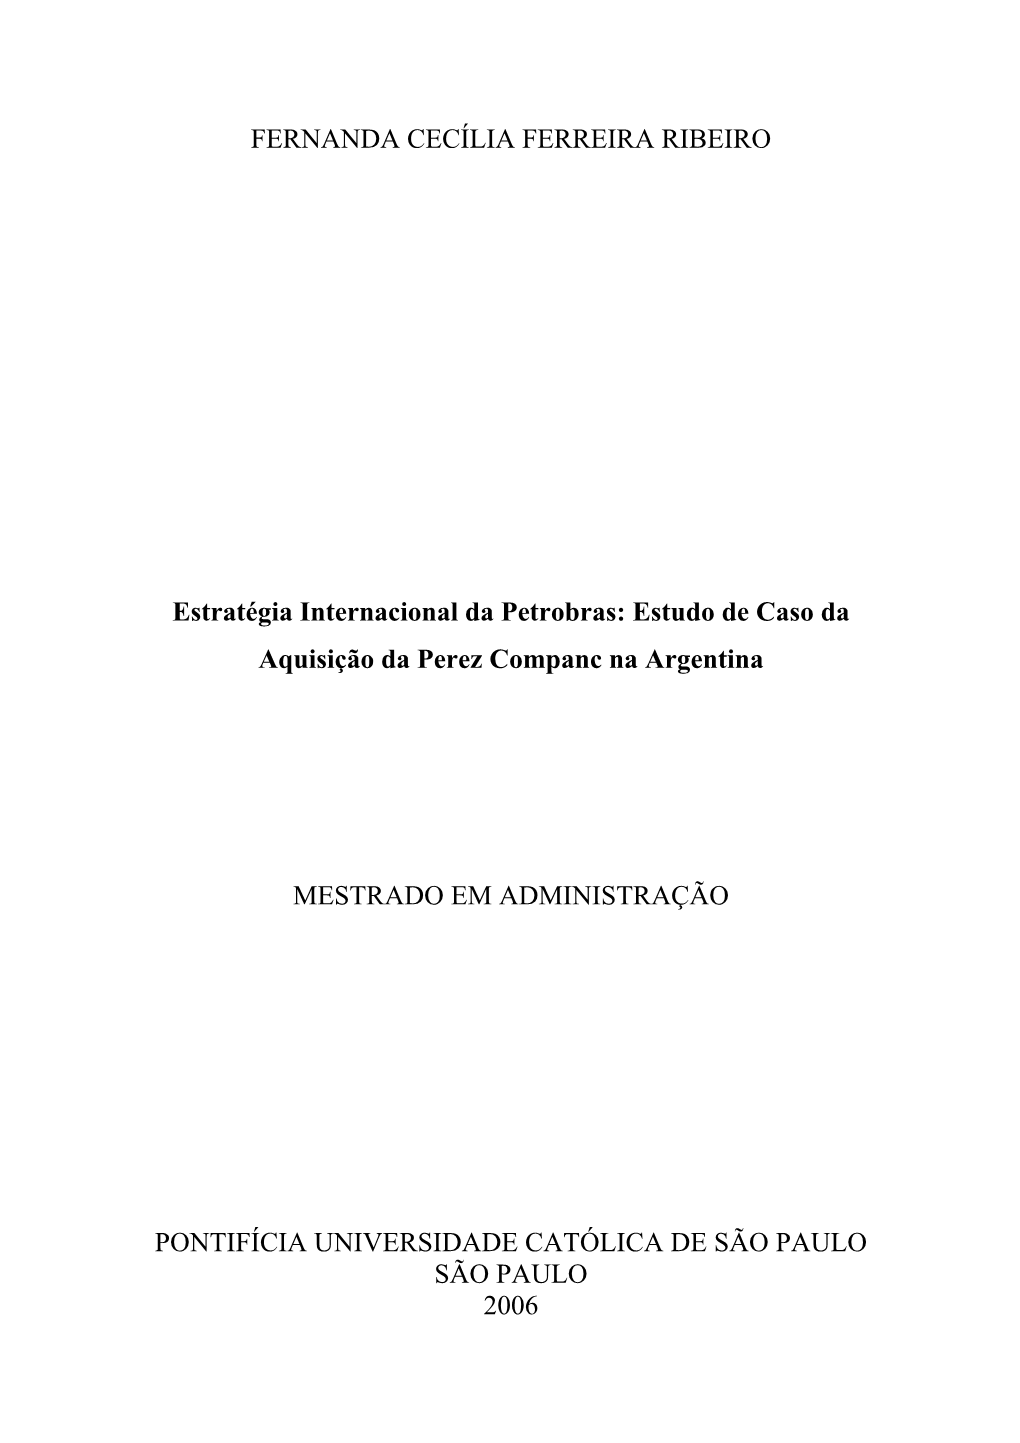 Estudo De Caso Da Aquisição Da Perez Companc Na Argentina